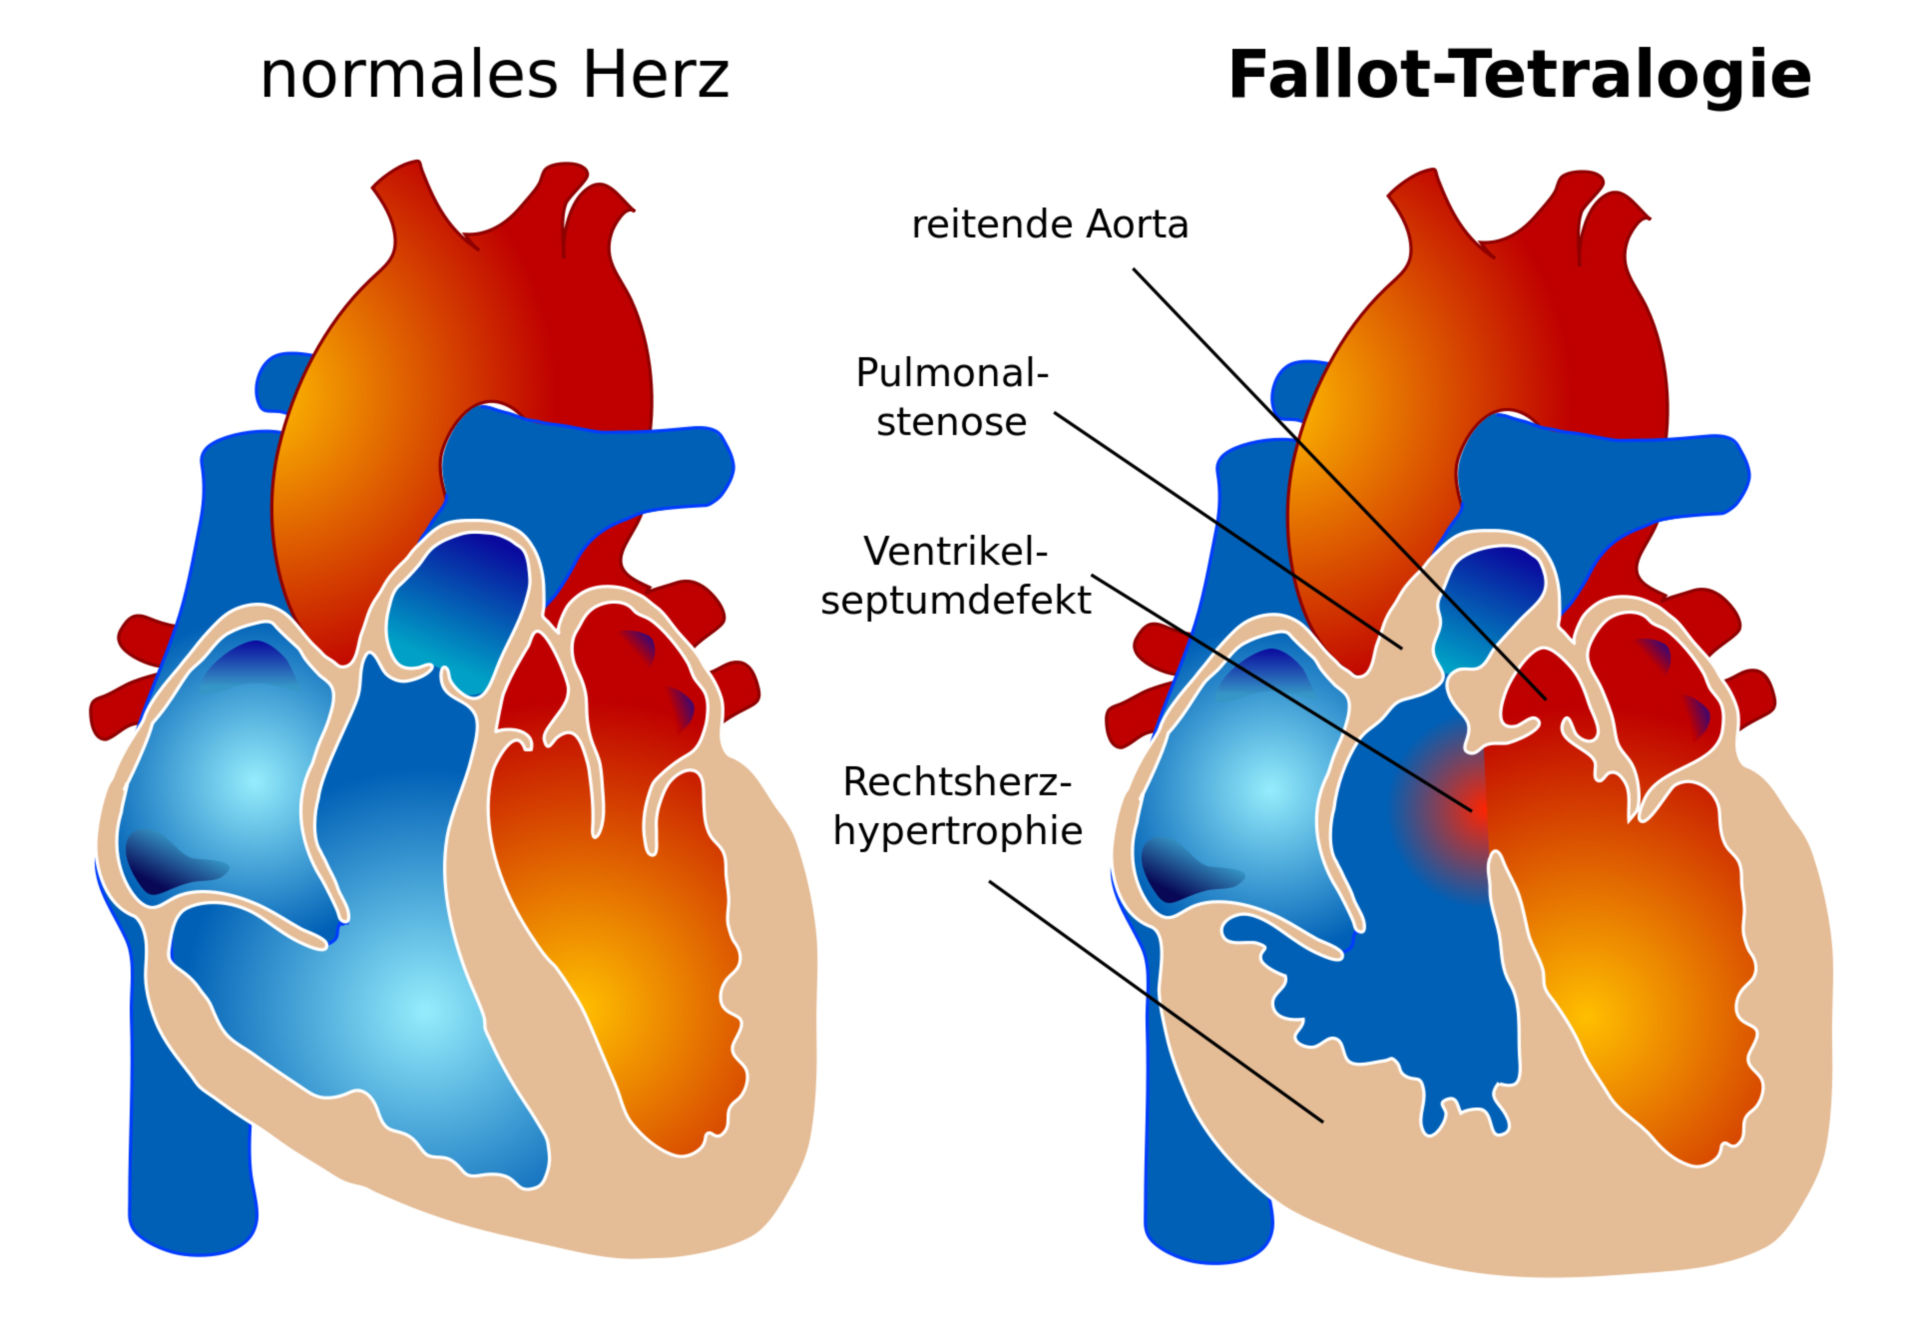 Morphology of Tetralogy of Fallot